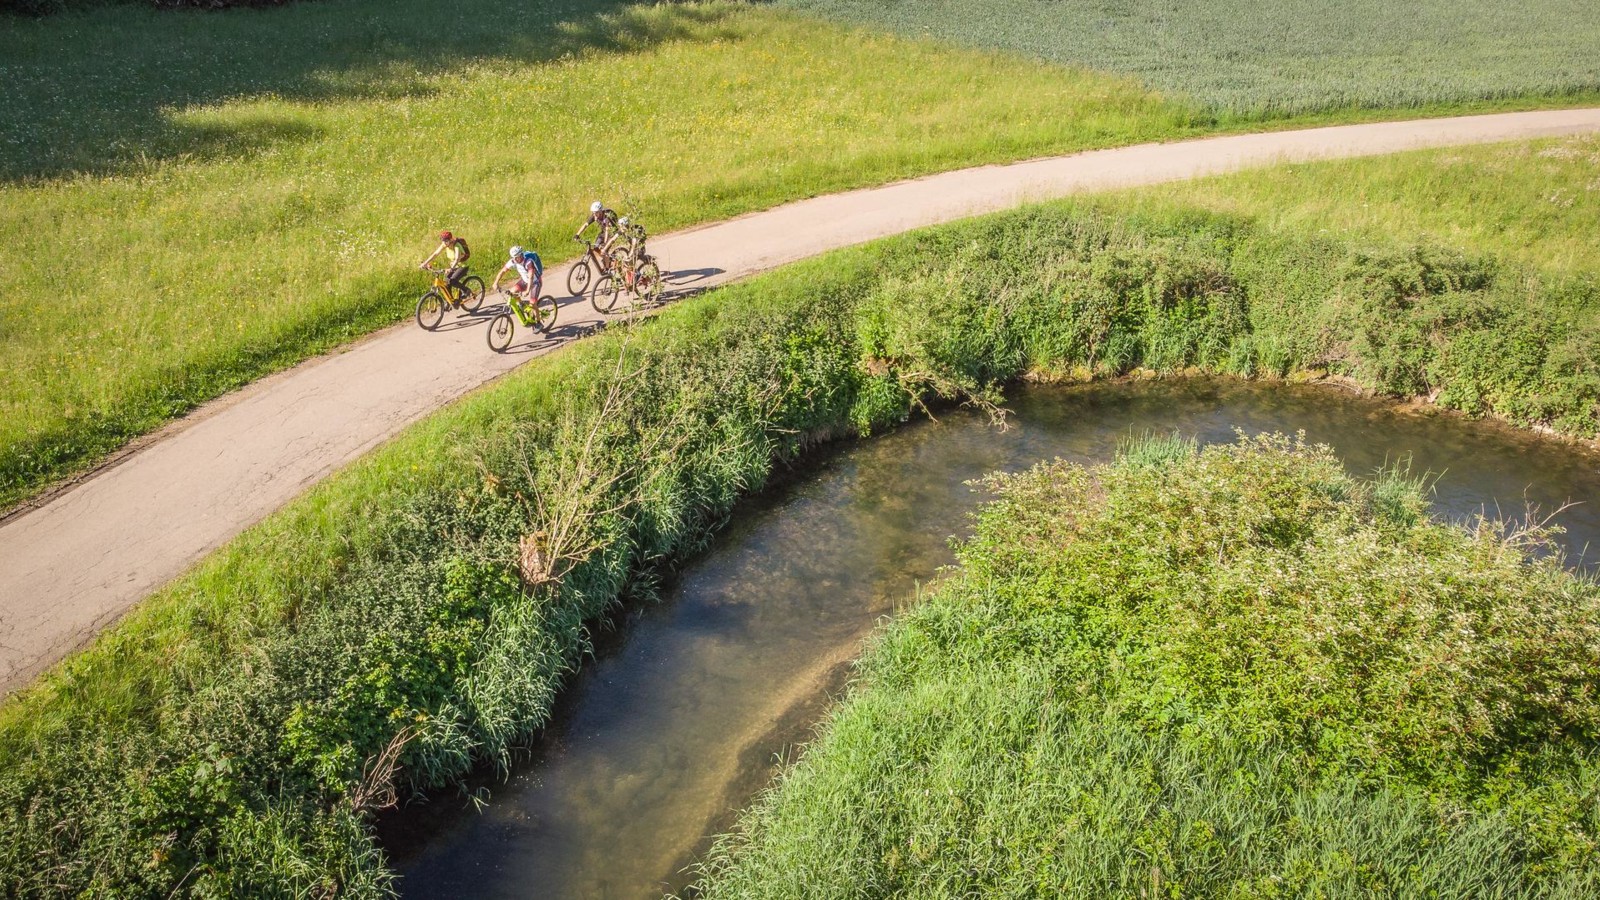 Radtour durch das Große Lautertal in Münsingen im Biosphärengebiet Schwäbische Alb. Vier Radfahrer*innen fahren auf einem Teerweg entlang an einem Fluss. Ringsherum sind Wiesen. Es ist Sommer.